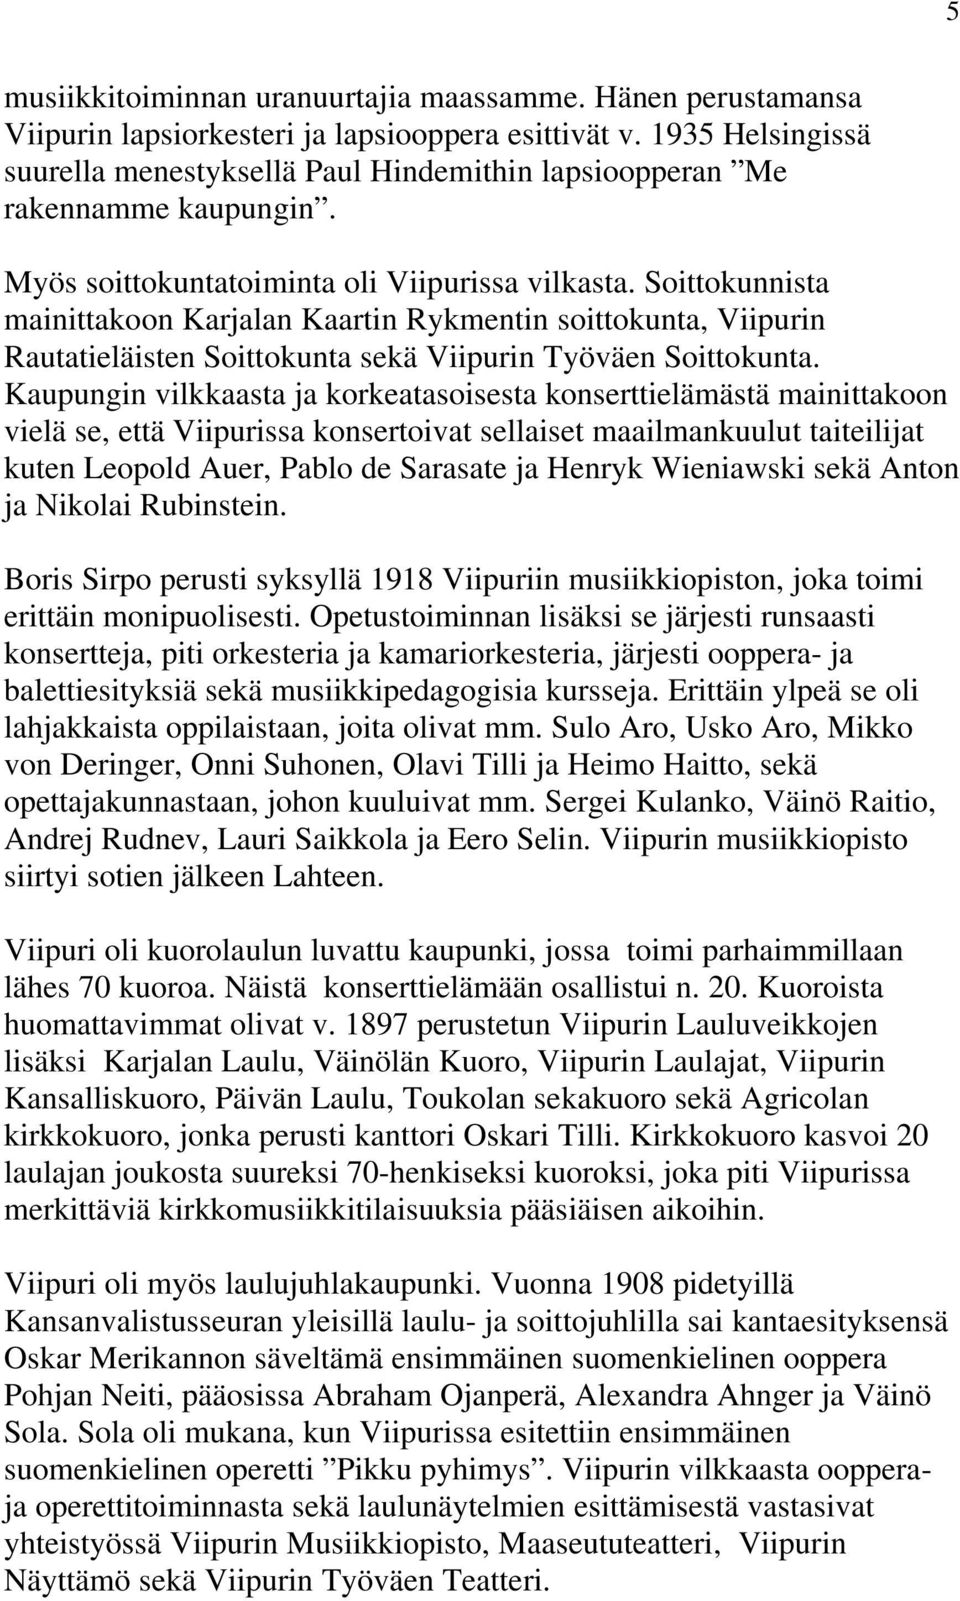 Soittokunnista mainittakoon Karjalan Kaartin Rykmentin soittokunta, Viipurin Rautatieläisten Soittokunta sekä Viipurin Työväen Soittokunta.